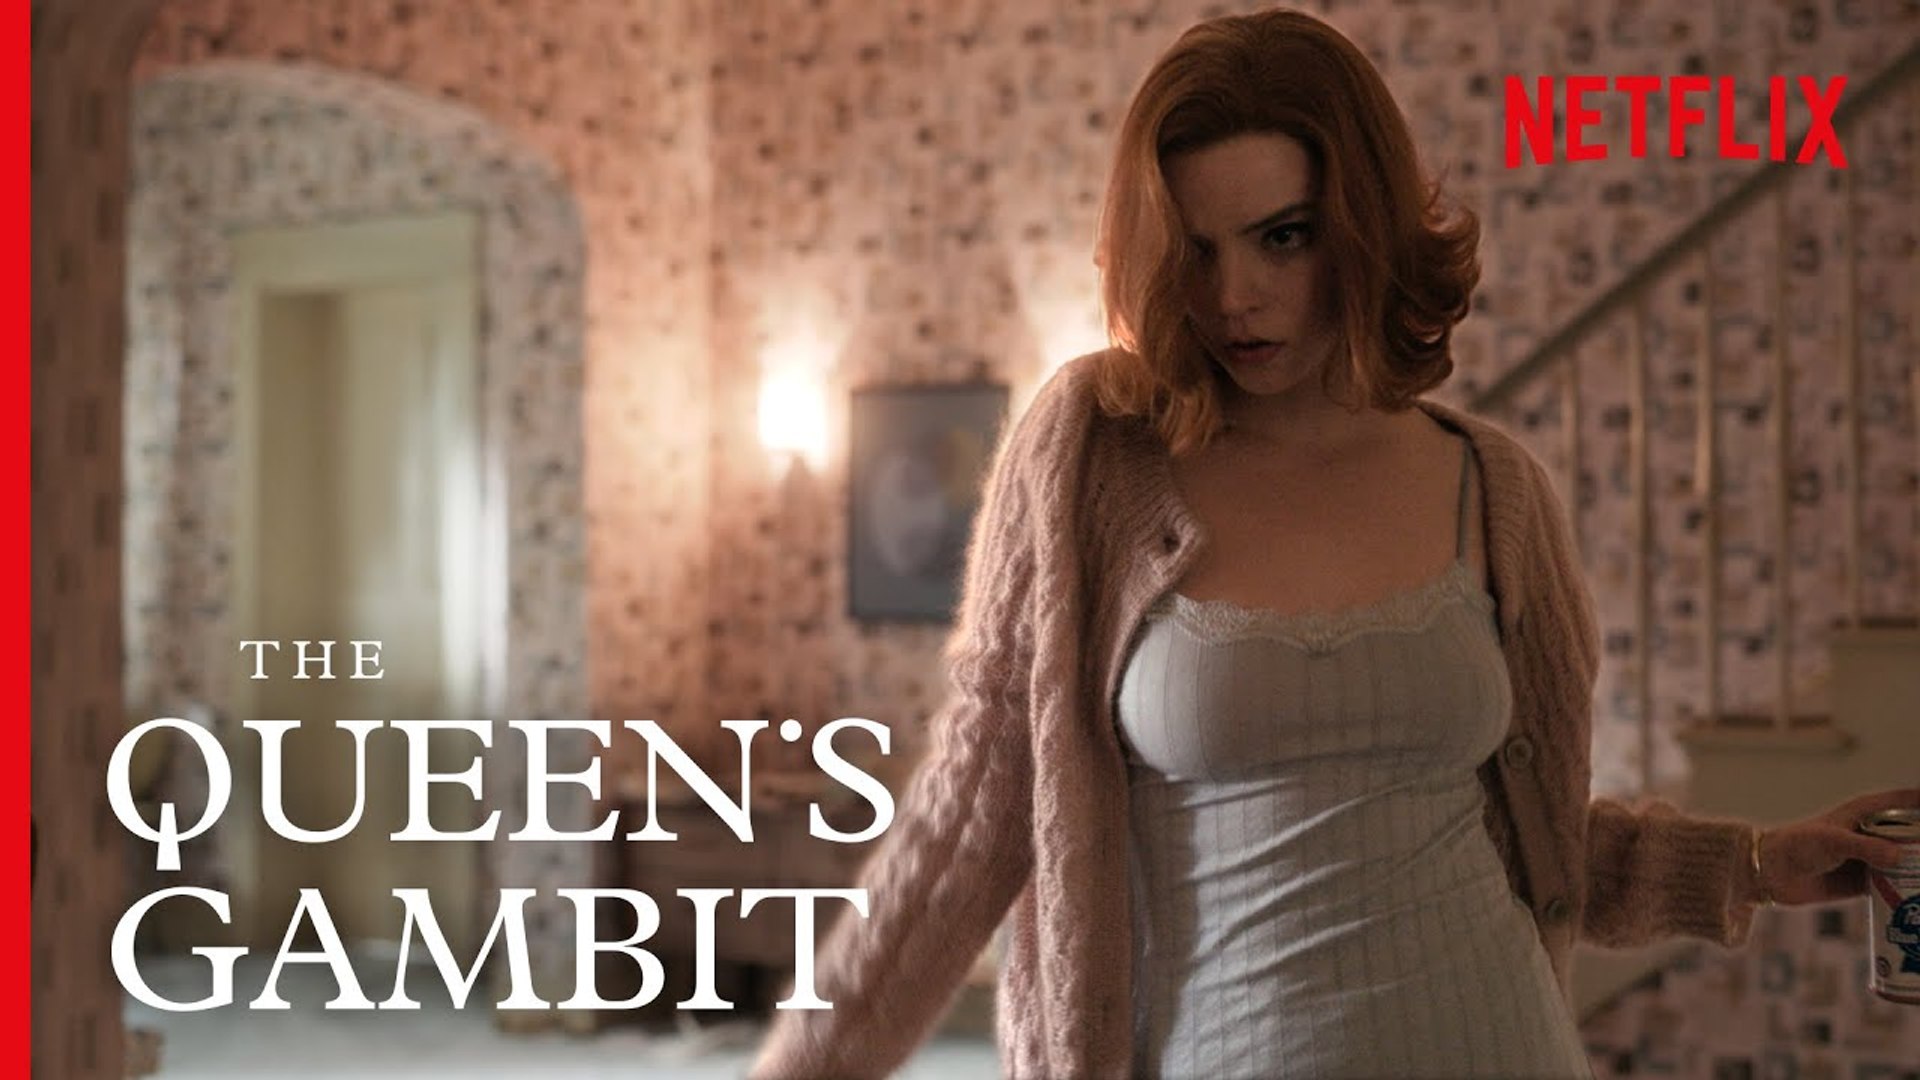 The Queen's Gambit menstruation scene - Indy100 Conversations